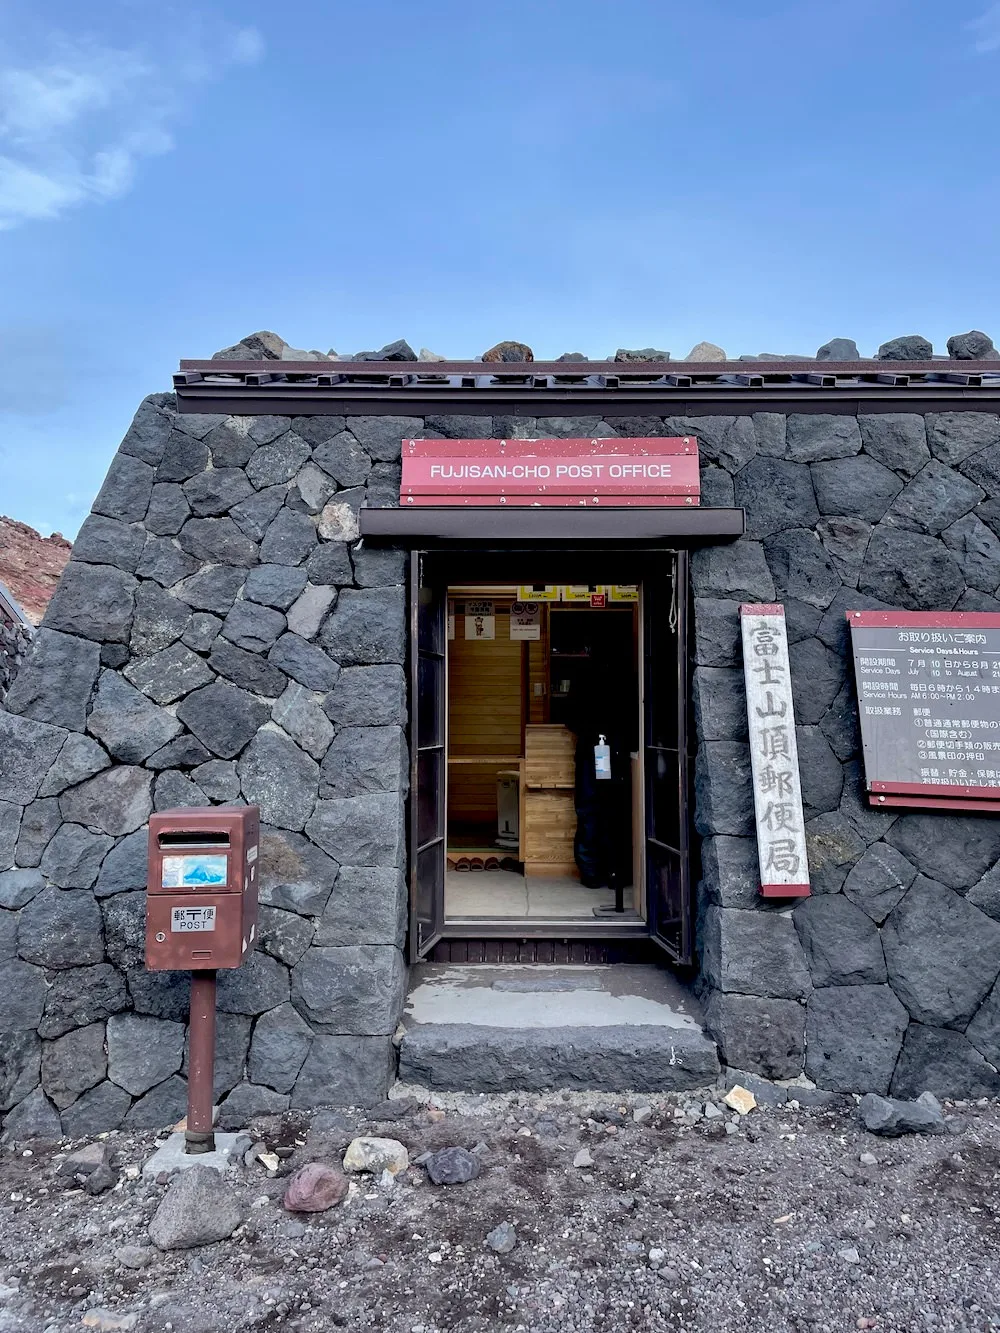 Mt. Fuji summit post office (Fuji-Sancho Post Office)